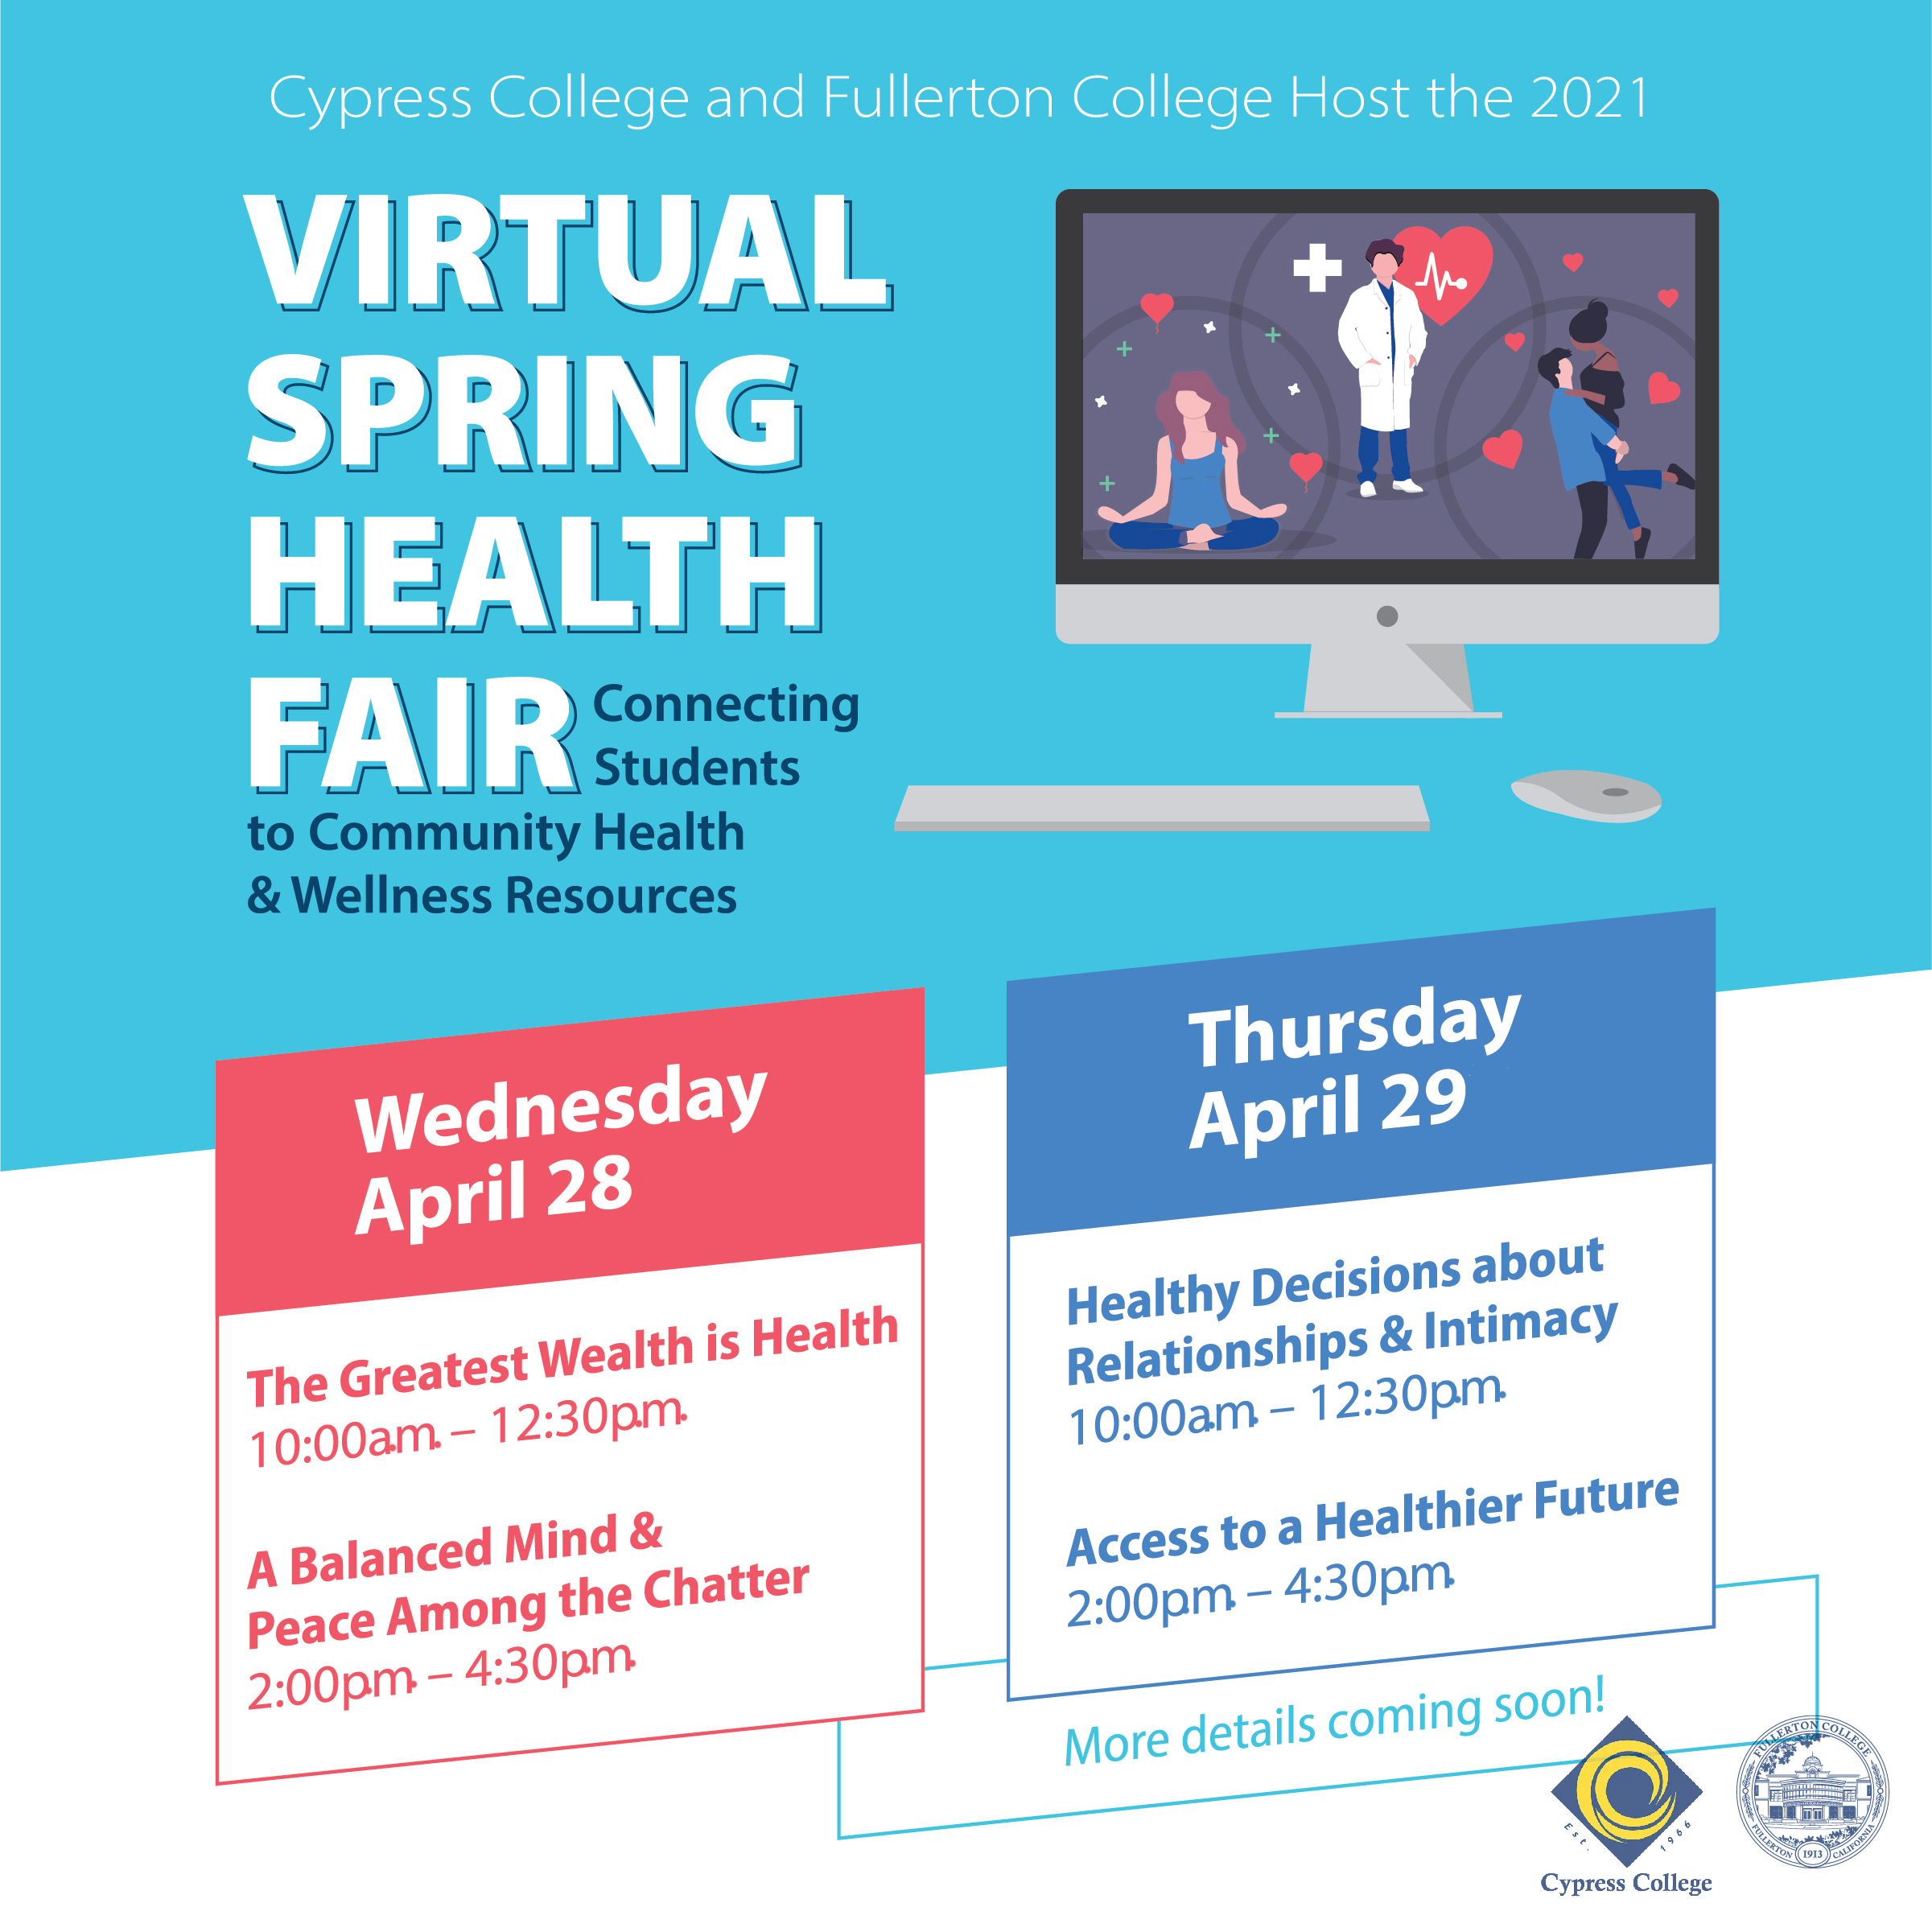 Details on virtual health fair event